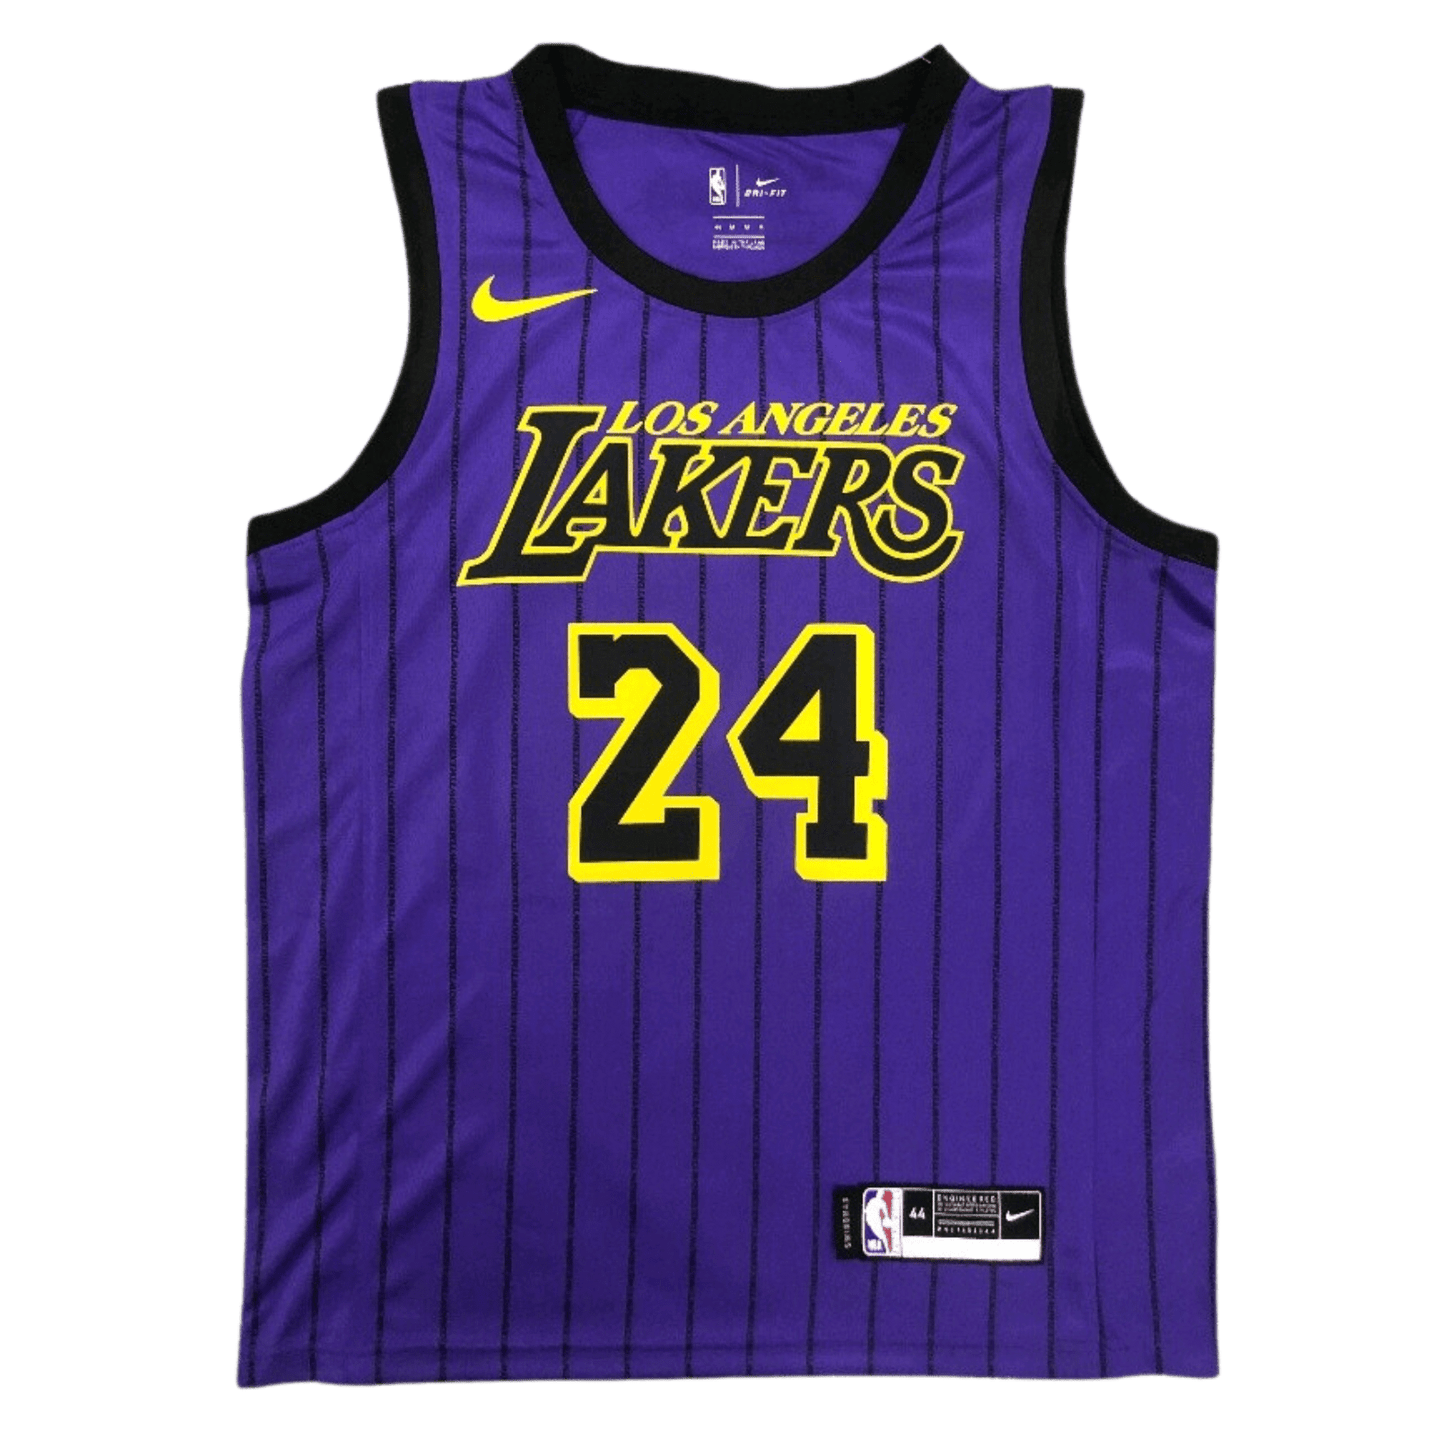 Kobe Bryant Los Angeles Lakers No. 24 Jersey 2021 Temporada Púrpura Raya Baloncesto